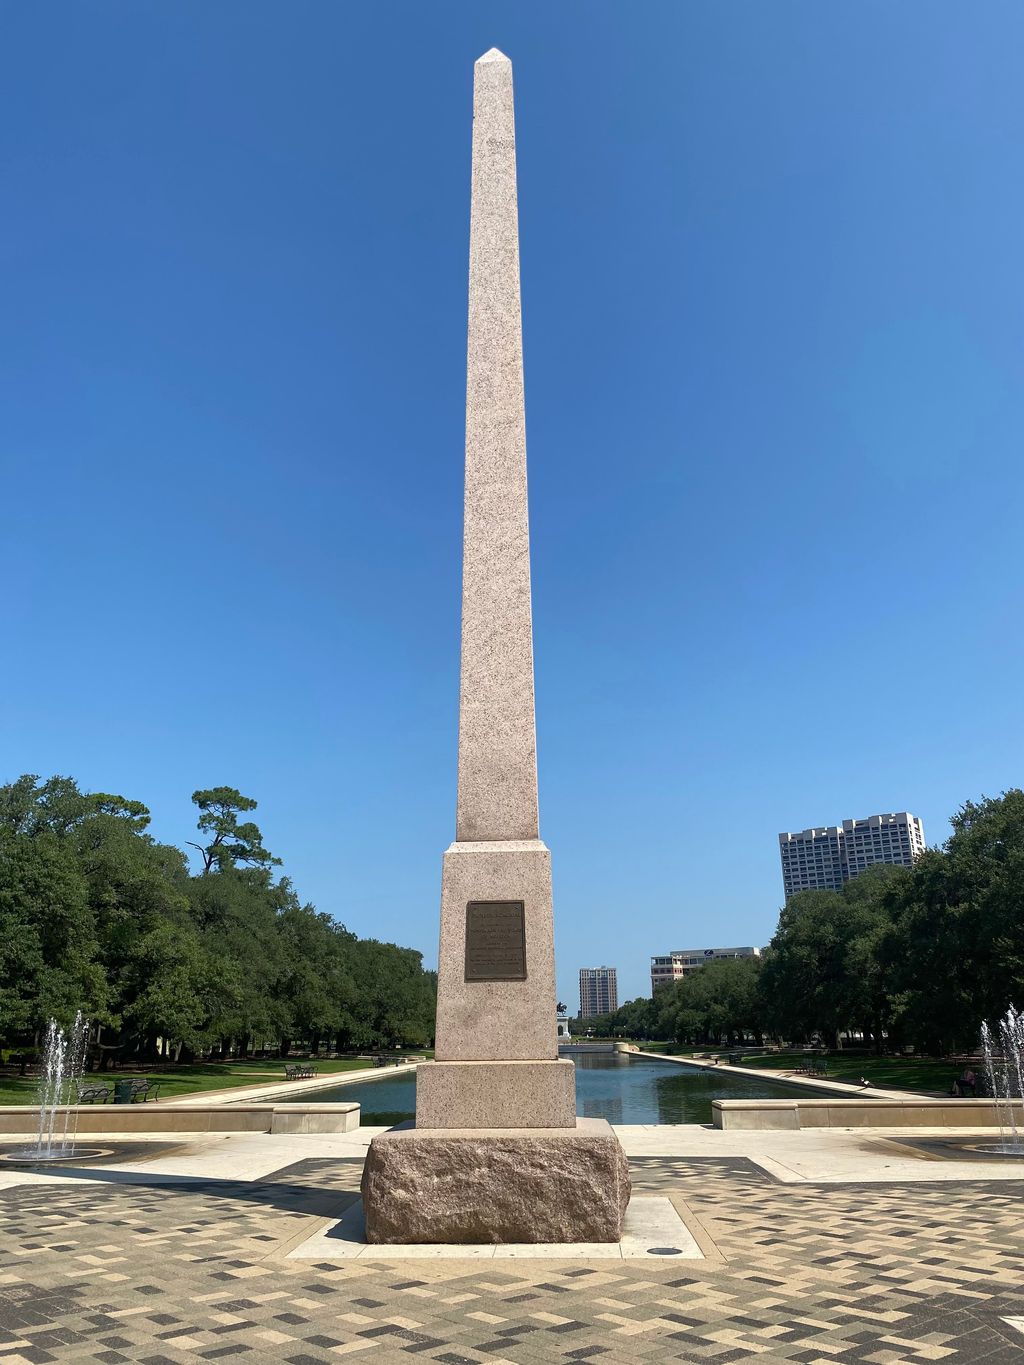 Pioneer Memorial Obelisk